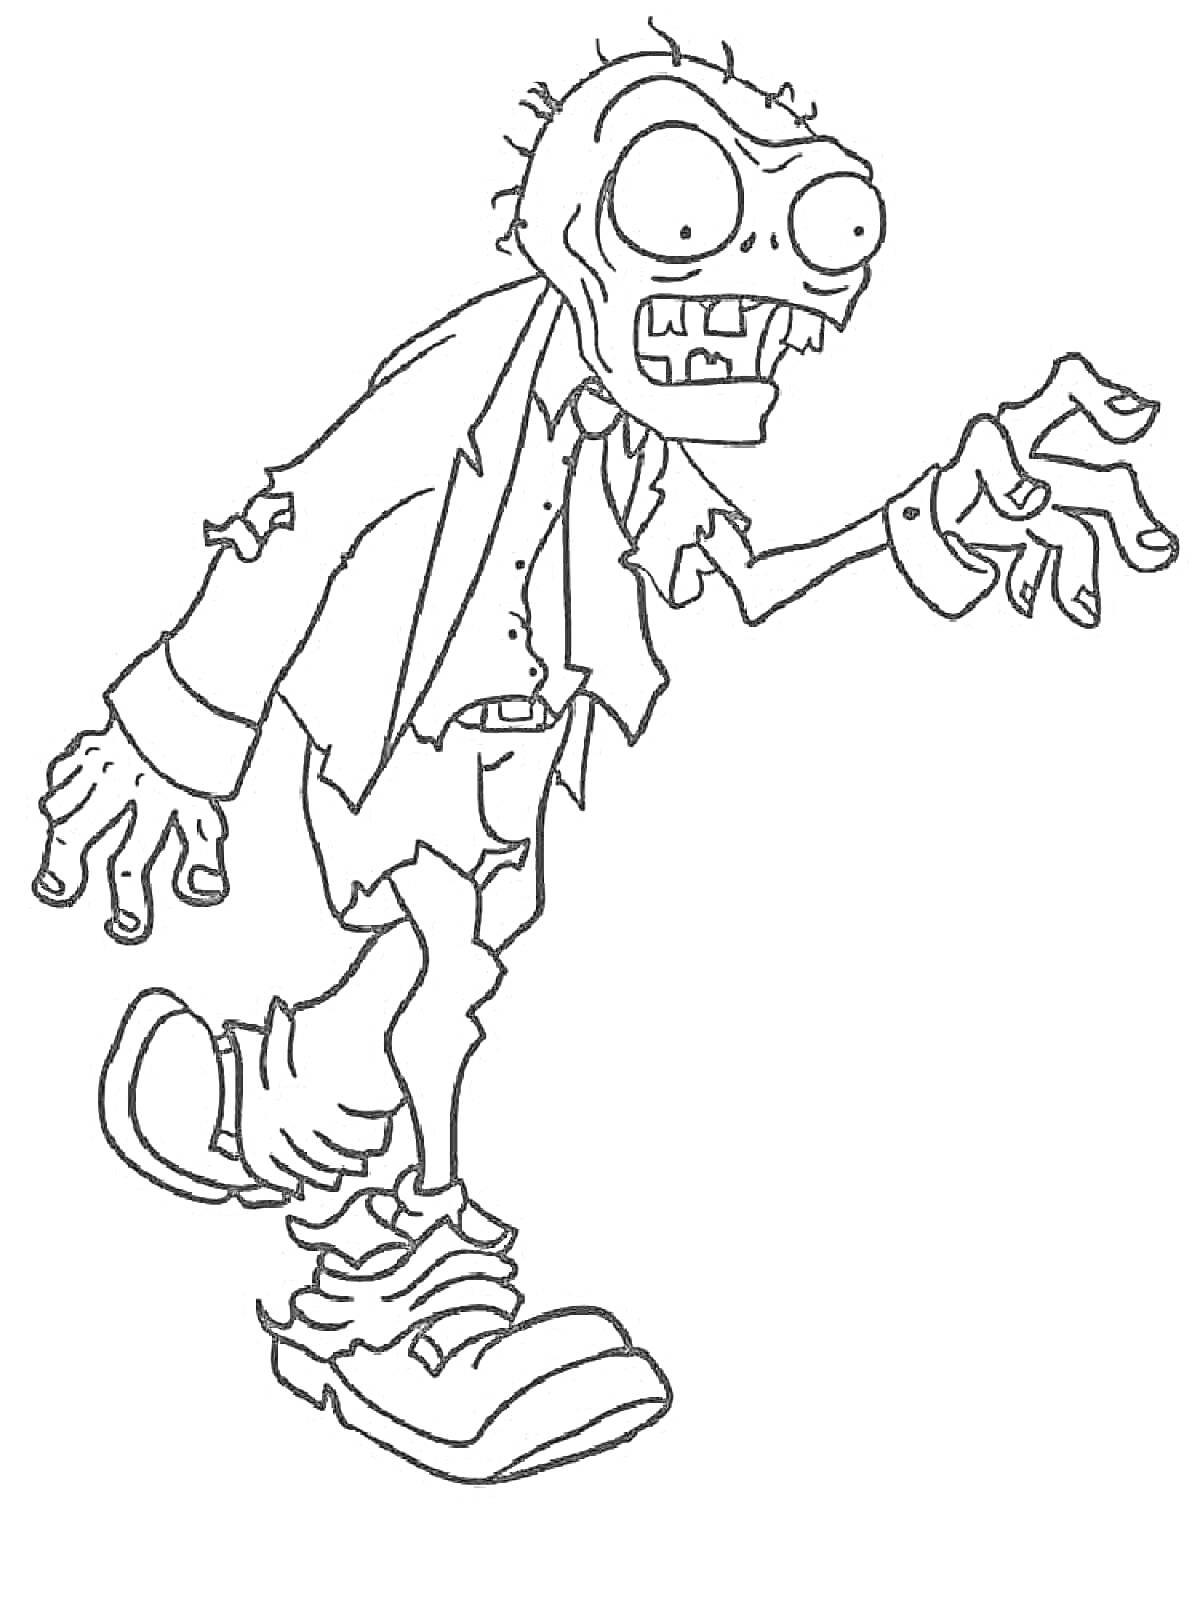 Раскраска Зомби в рваном костюме и ботинках с выпученными глазами и торчащими волосками на голове